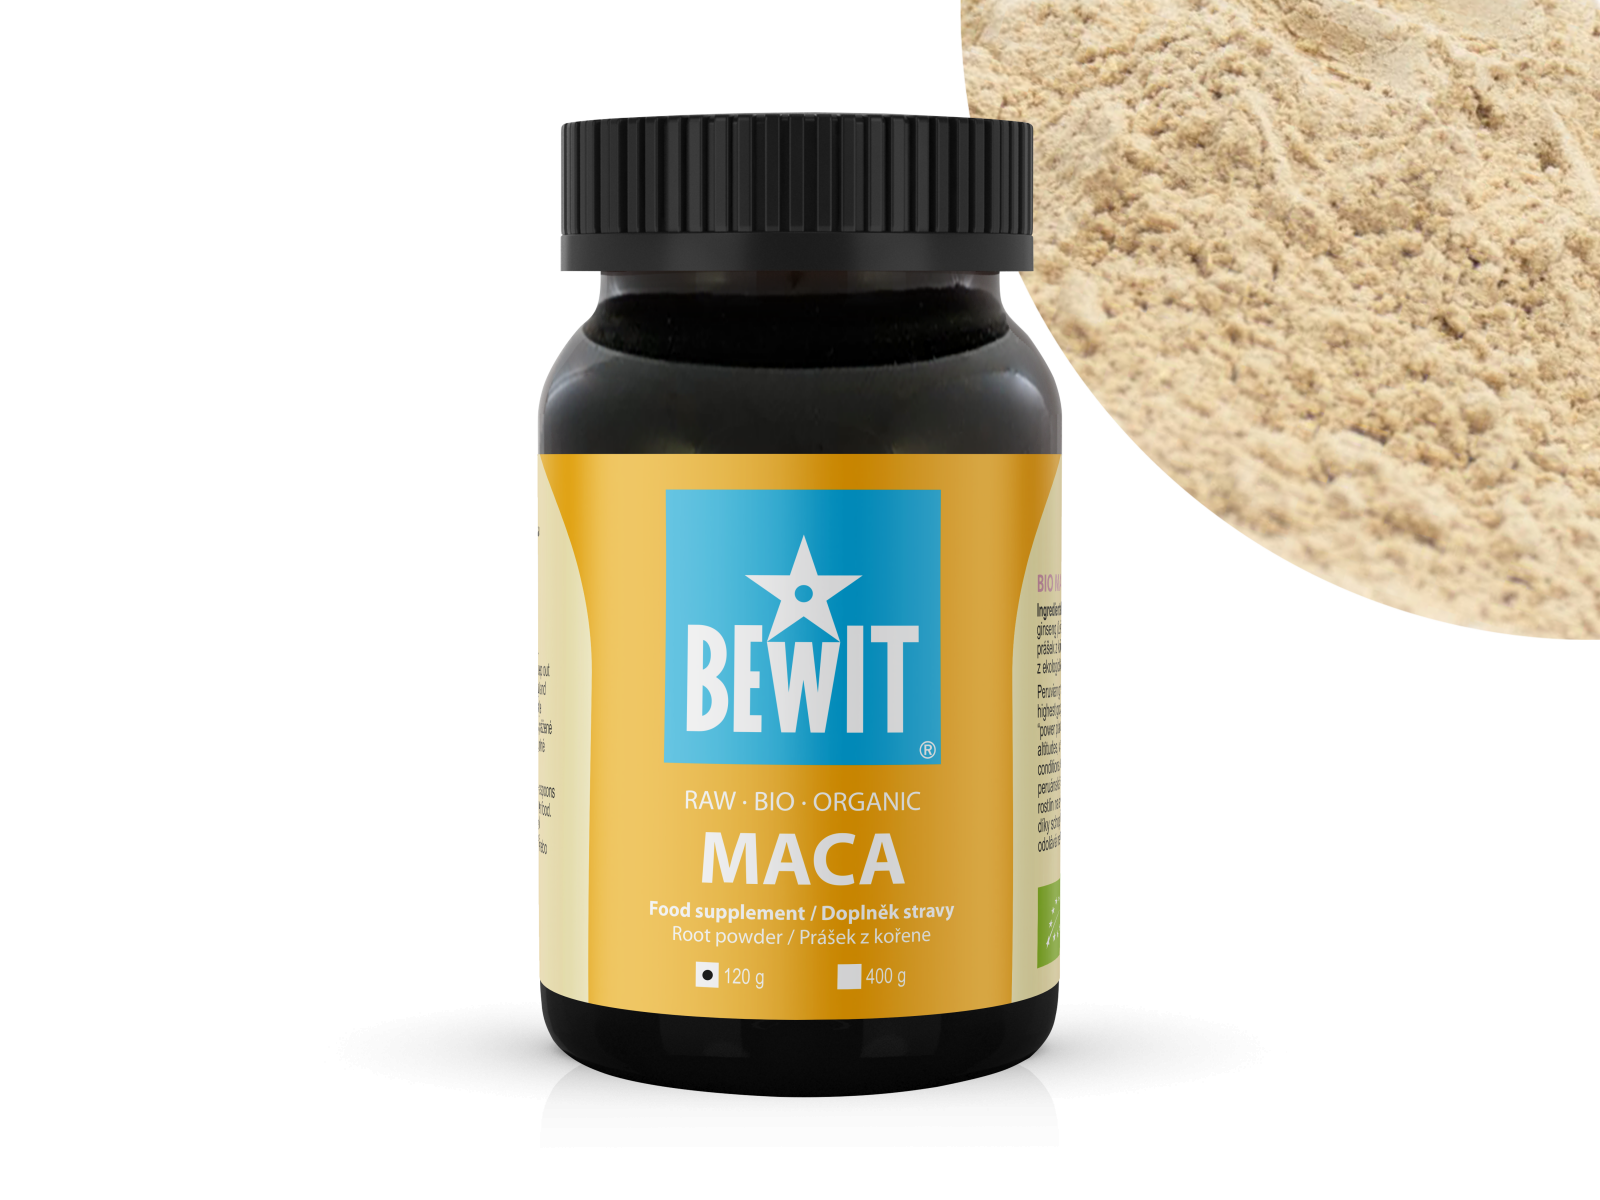 BEWIT BIO RAW MACA - Maca peruwiańska, sproszkowany korzeń, suplement diety - 1